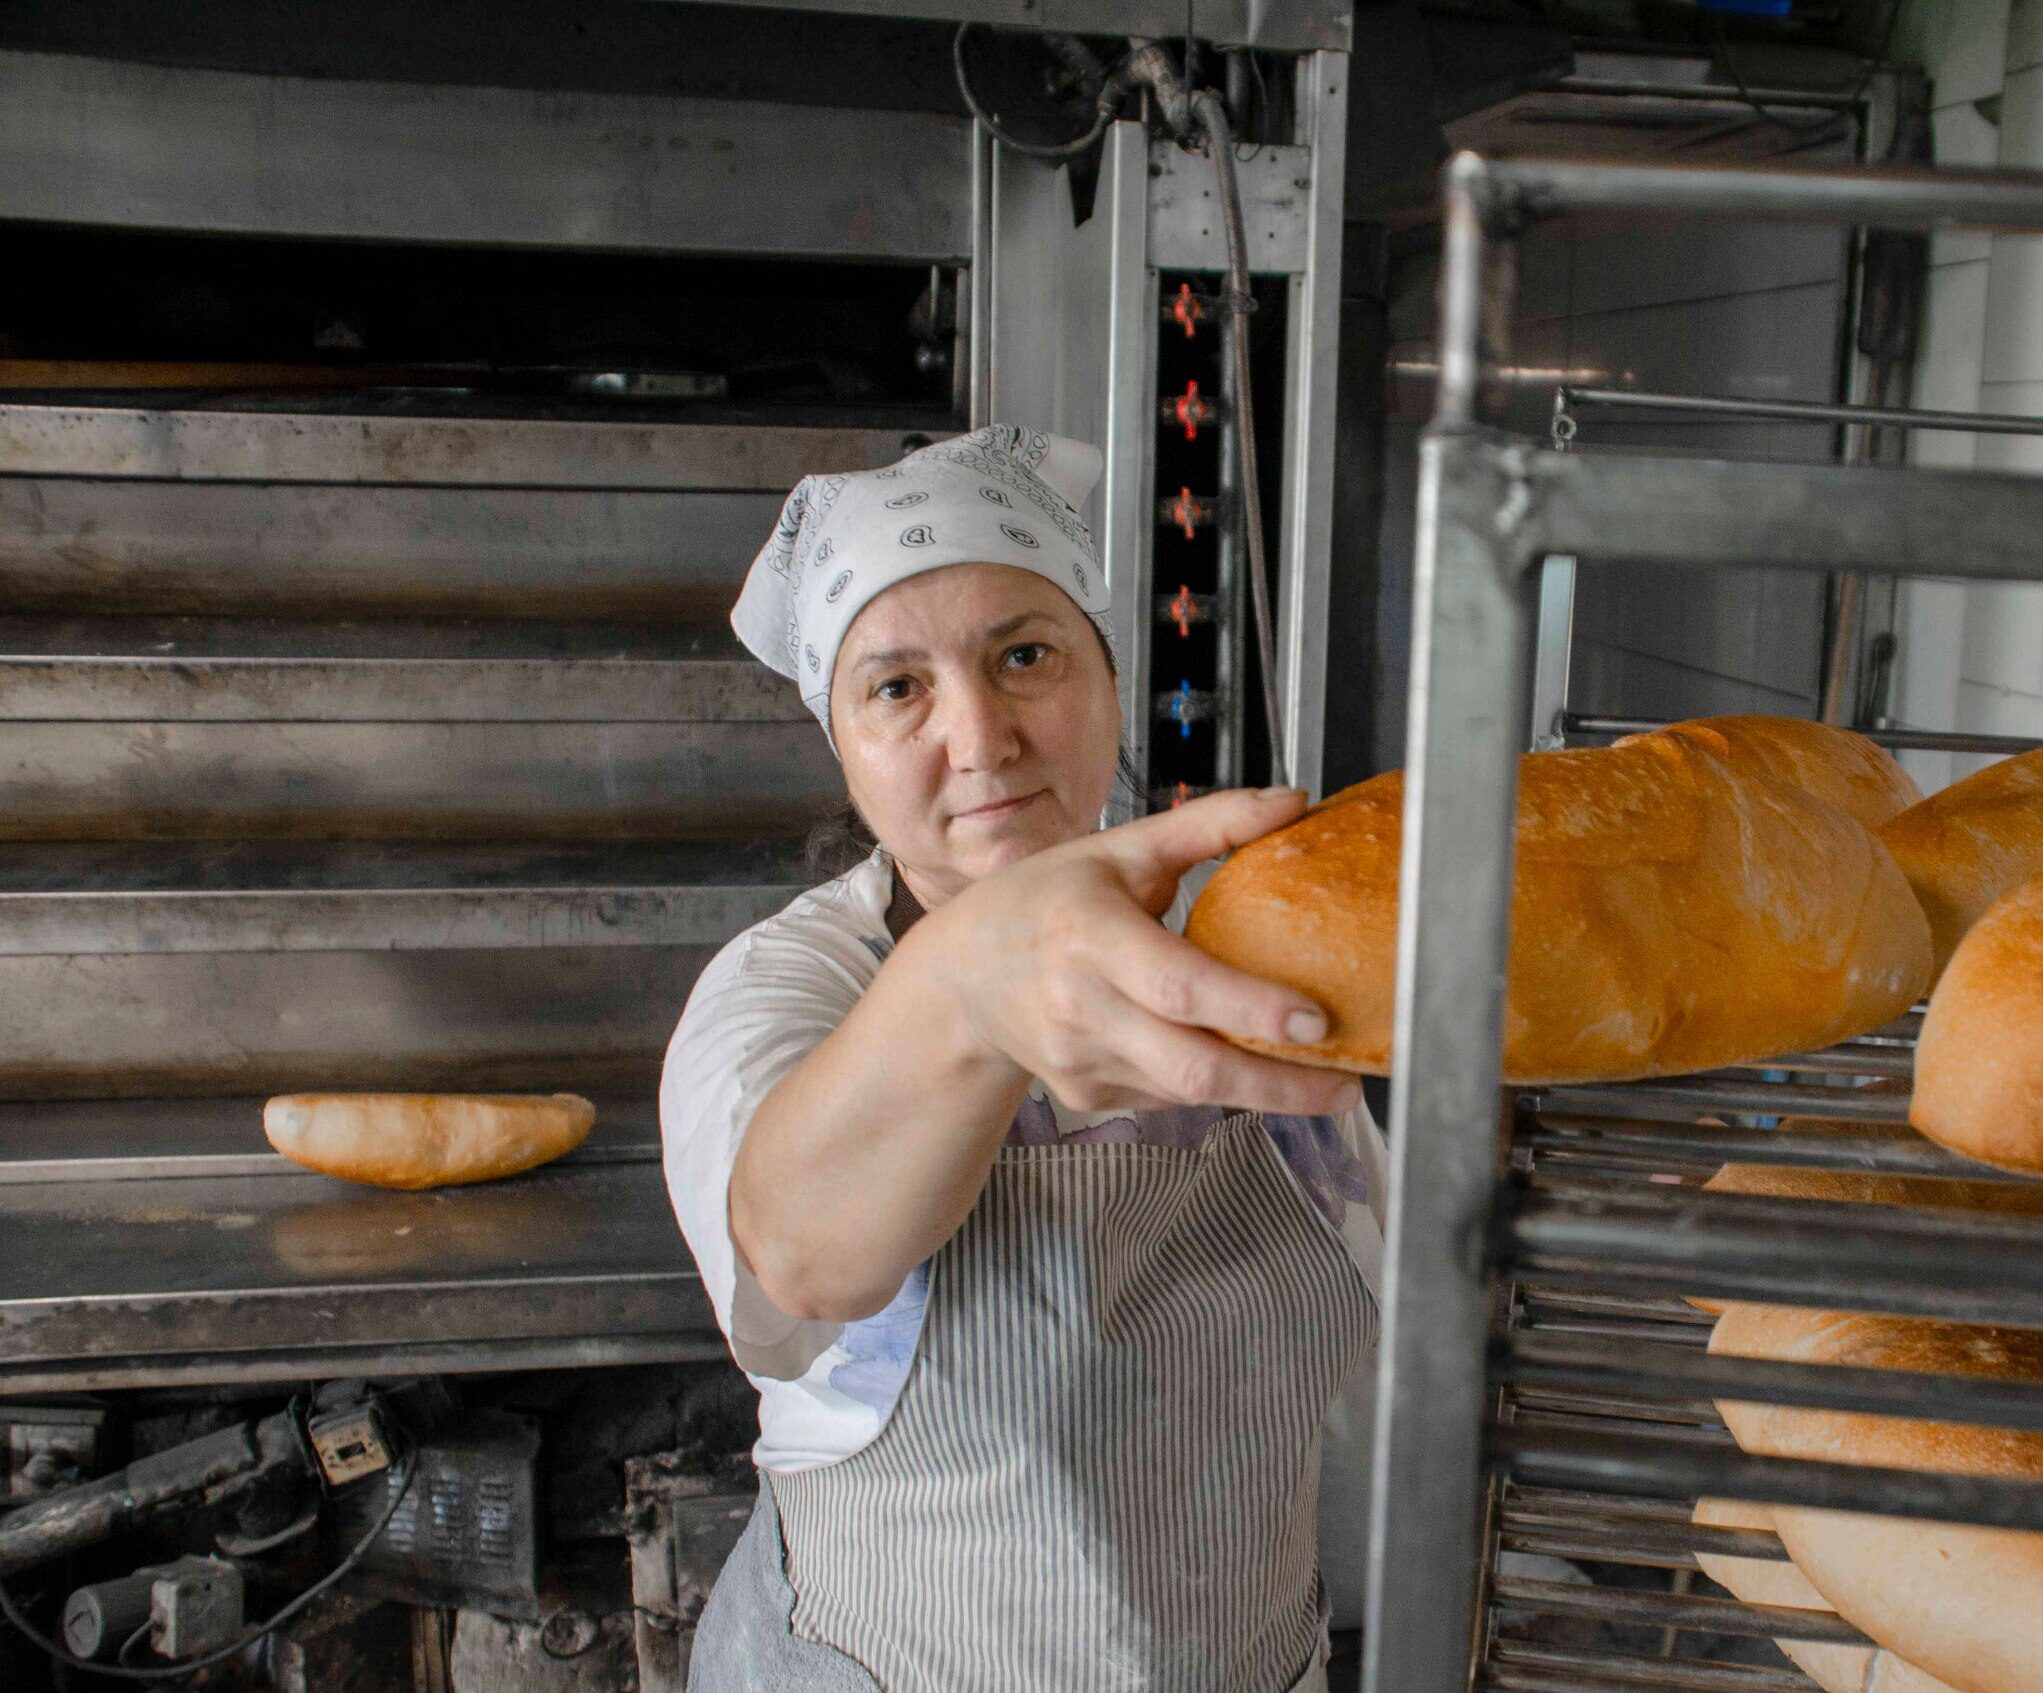 Bread of life bakery